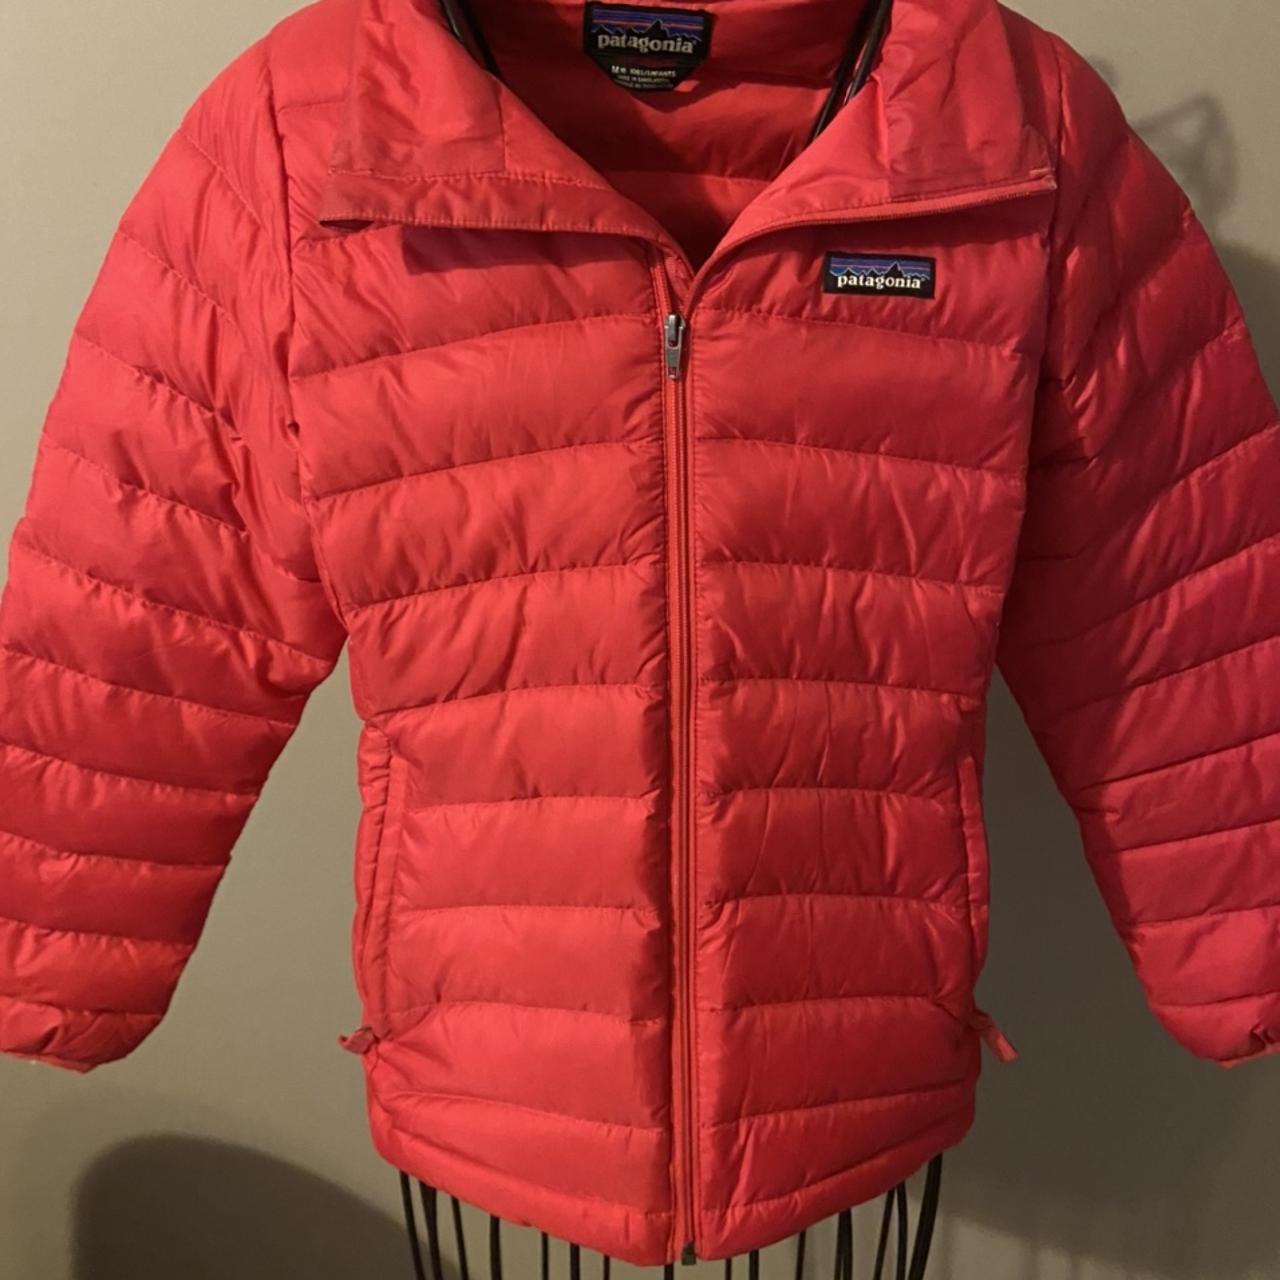 Patagonia Jacket Womens Medium Red Fleece Lined - Depop